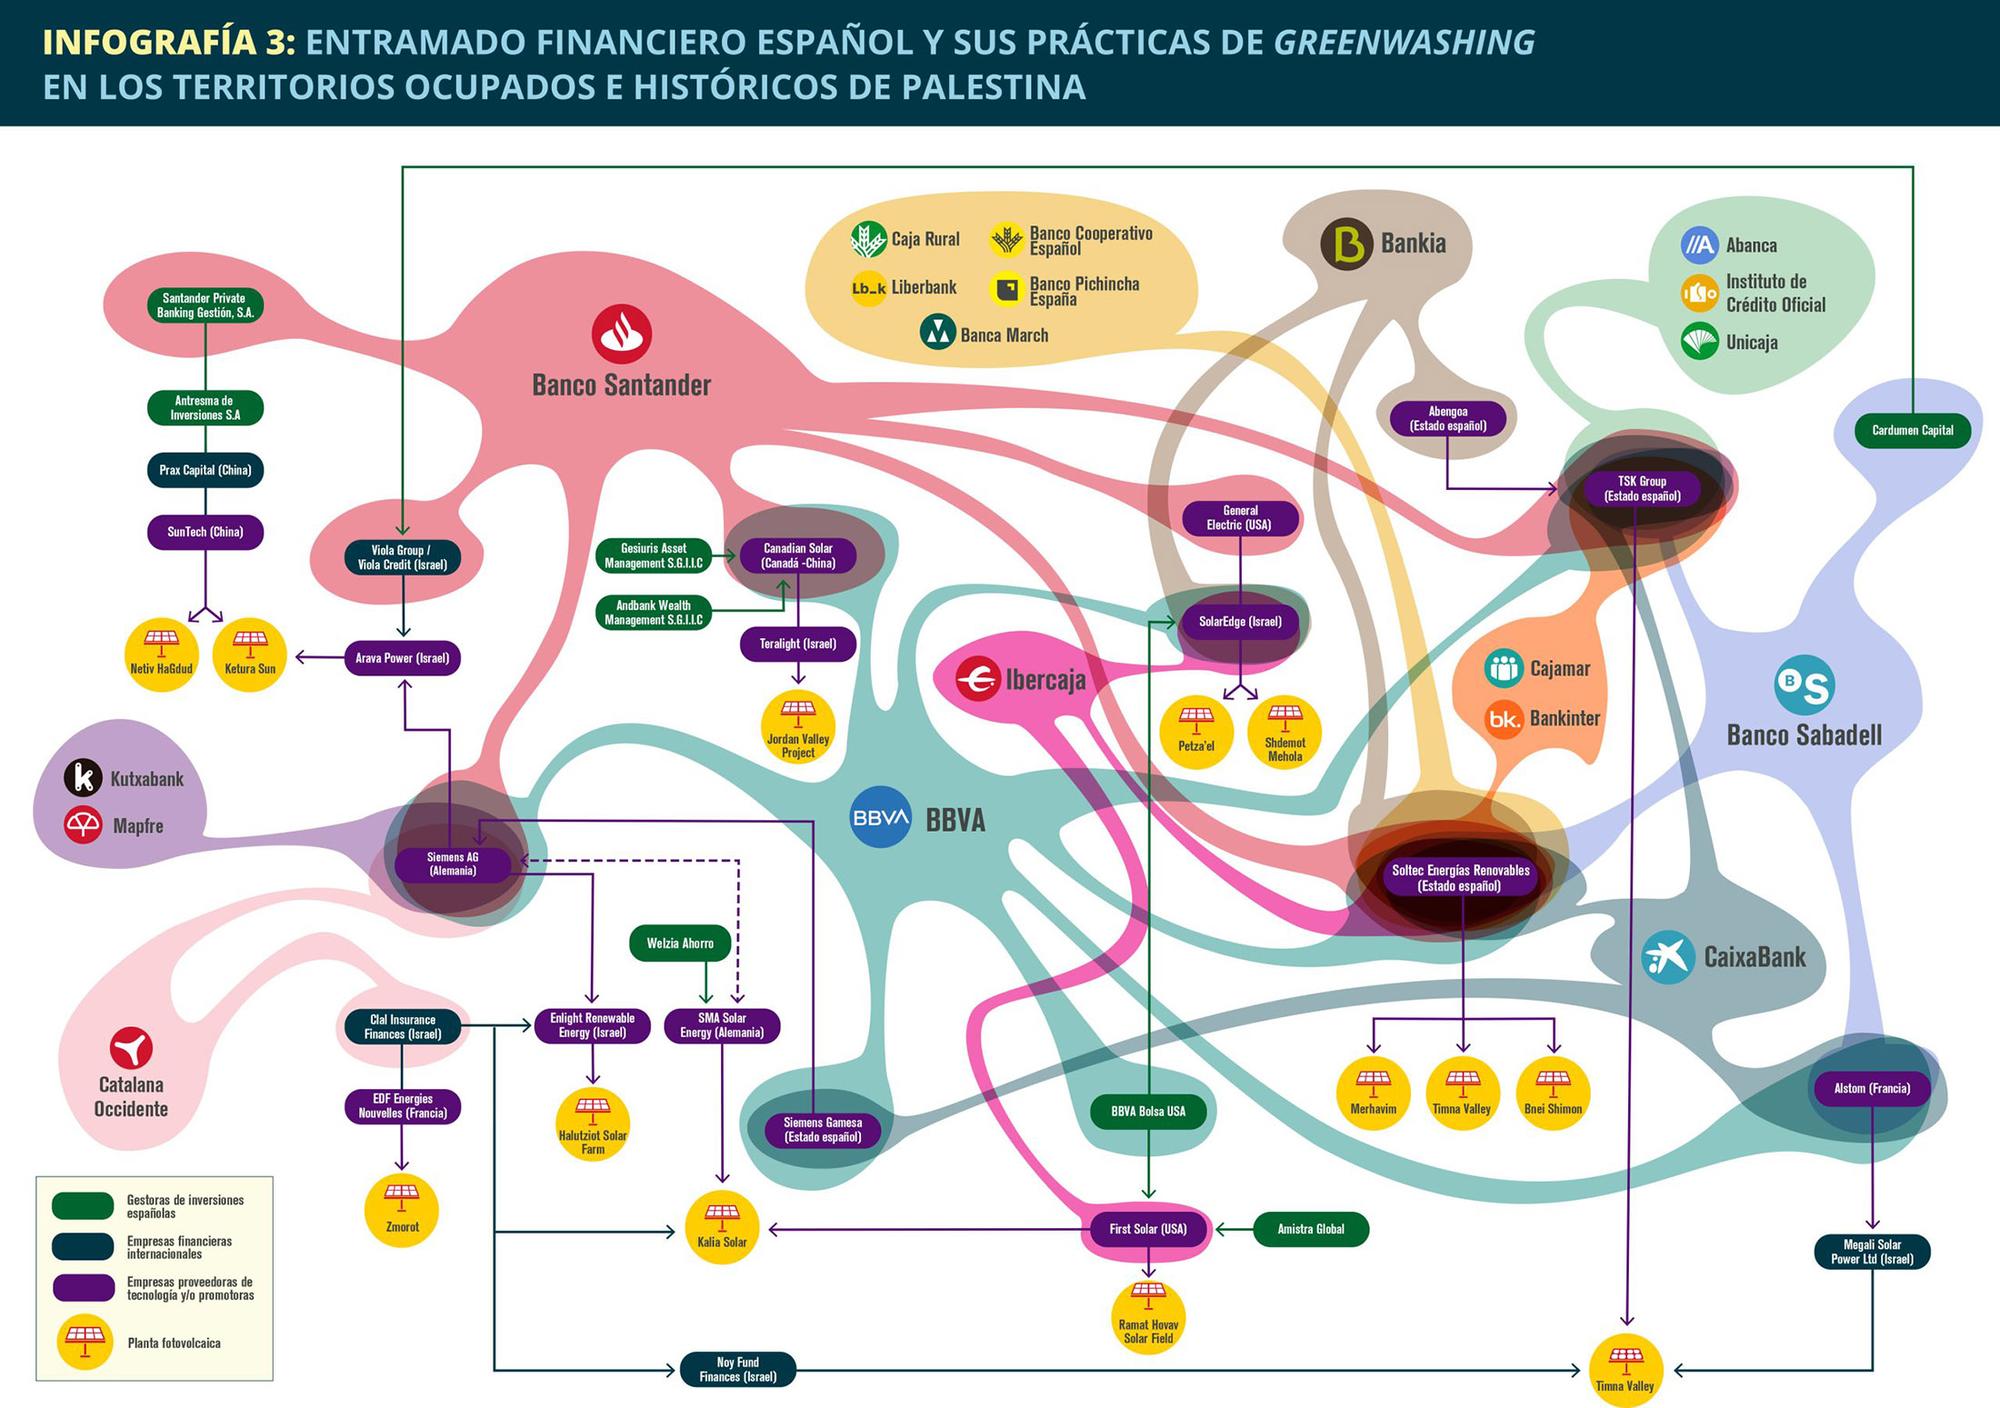 Infografia La complicidad del sector financiero español en la ocupación de Palestina 3